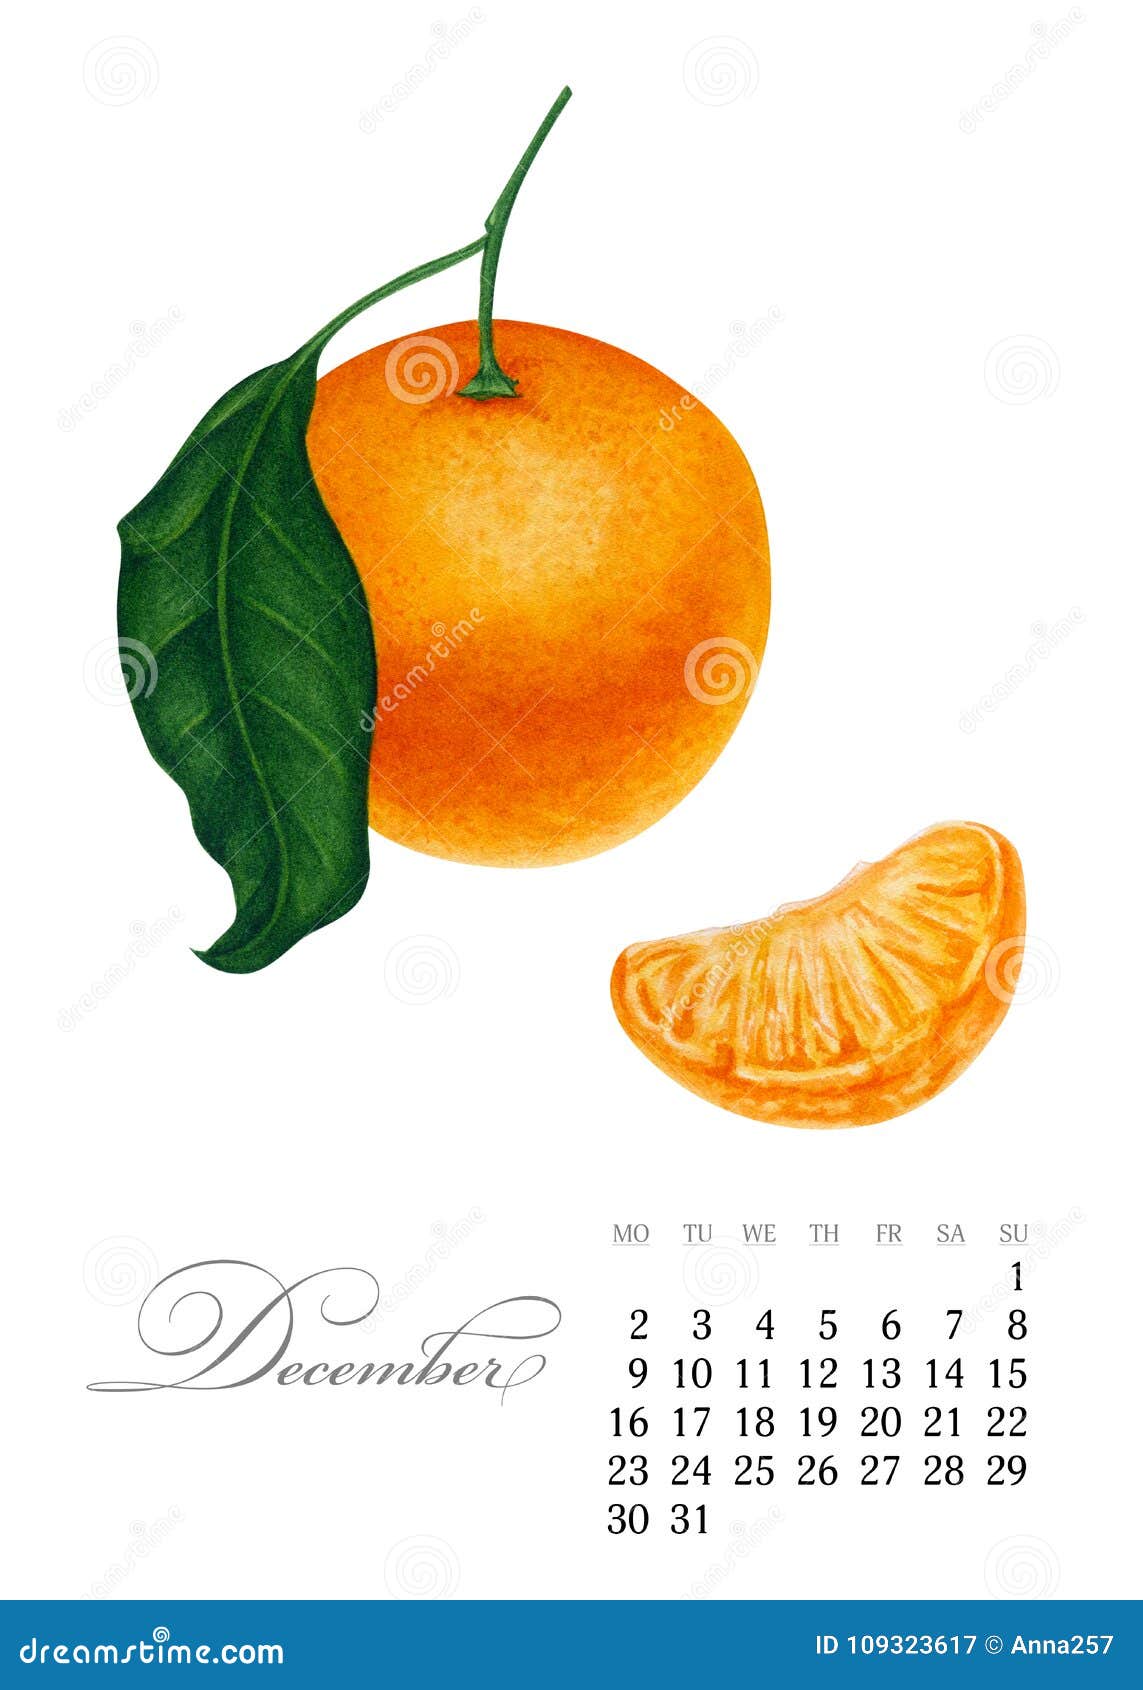 elegant-printable-calendar-2019-december-watercolor-mandarin